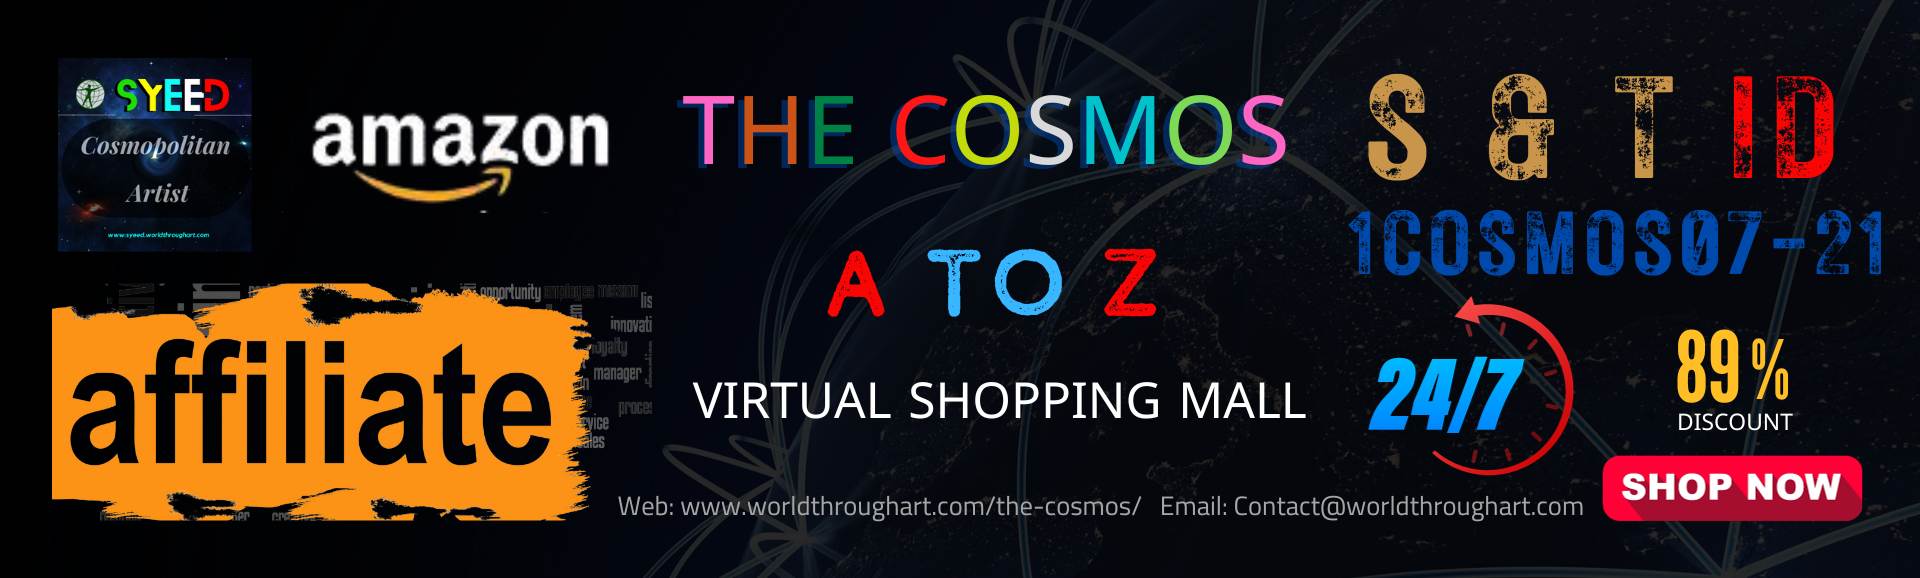 WTA's The Cosmos: A to Z Virtual Shopping Mall